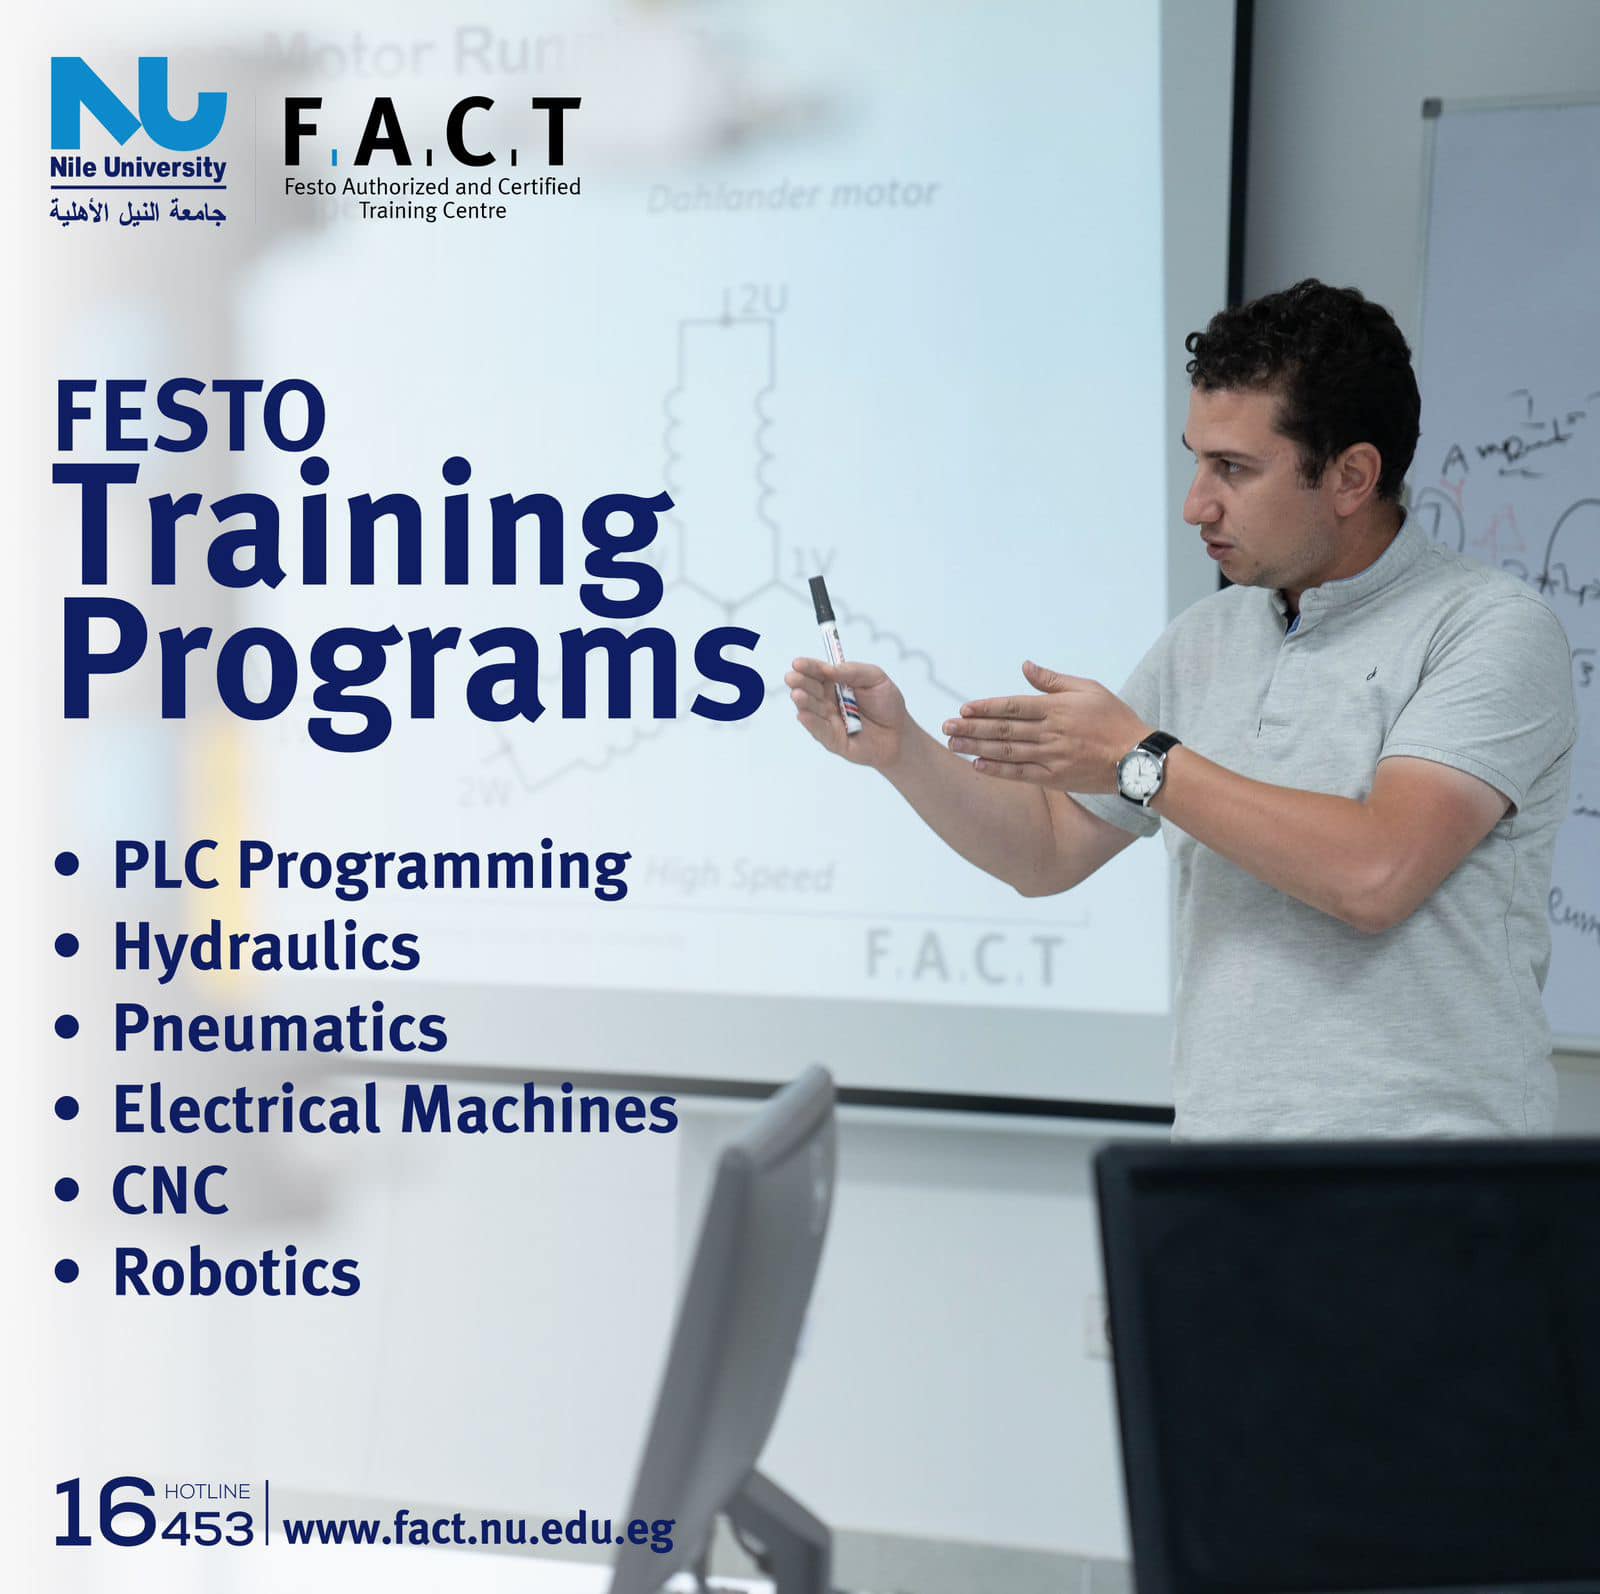 FESTO training programs at F.A.C.T Centre